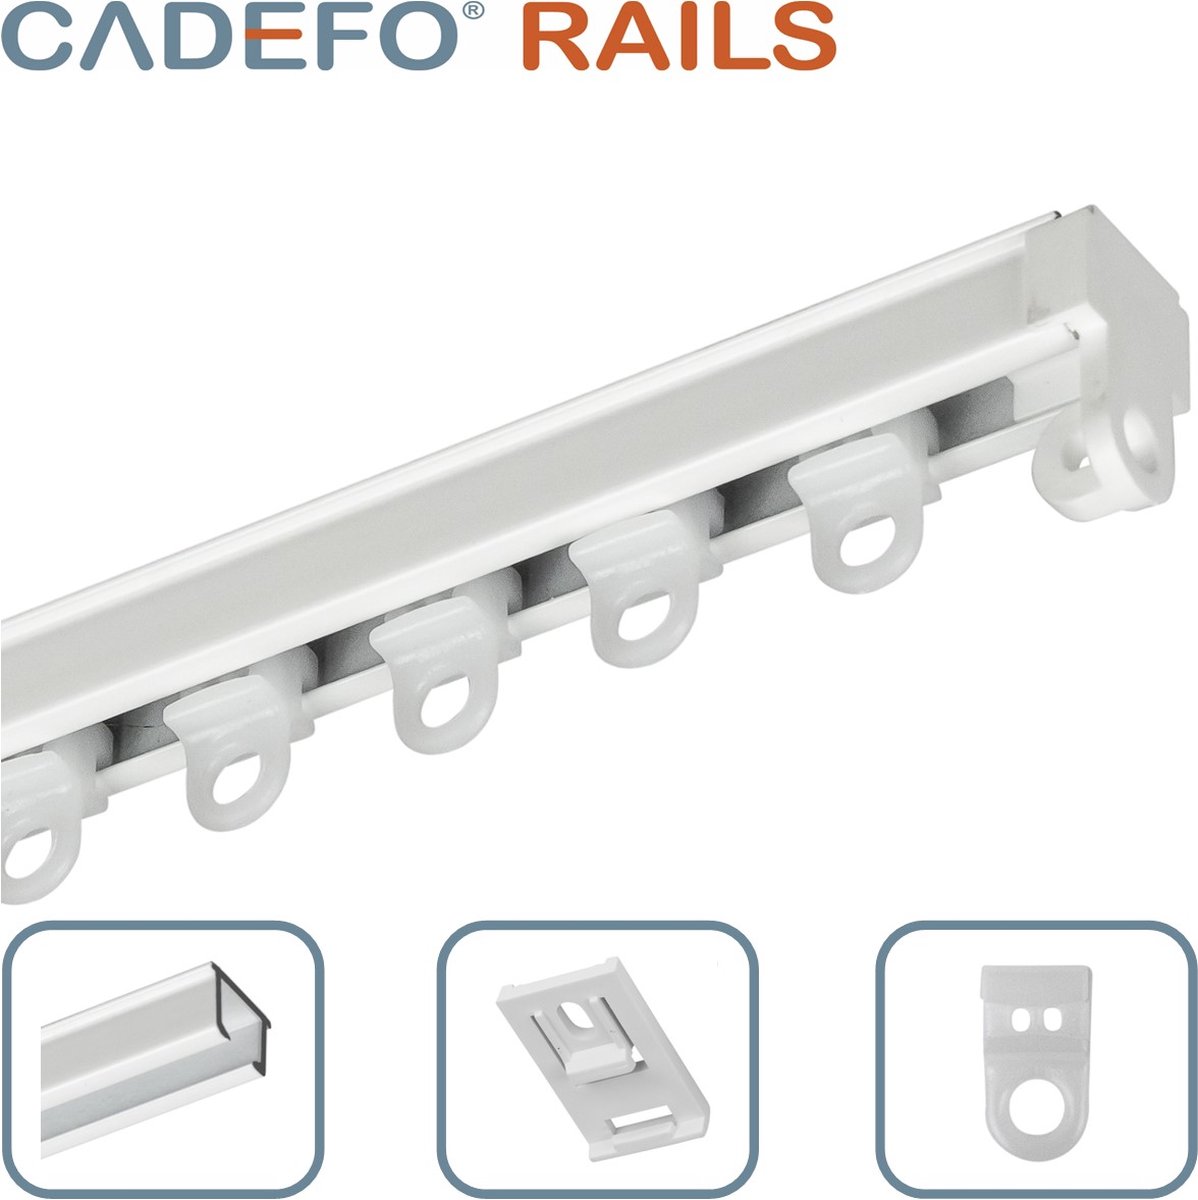 CADEFO RAILS (551 - 600 cm) Gordijnrails - Compleet op maat! - UIT 1 STUK - Leverbaar tot 6 meter - Plafondbevestiging - Lengte 598 cm